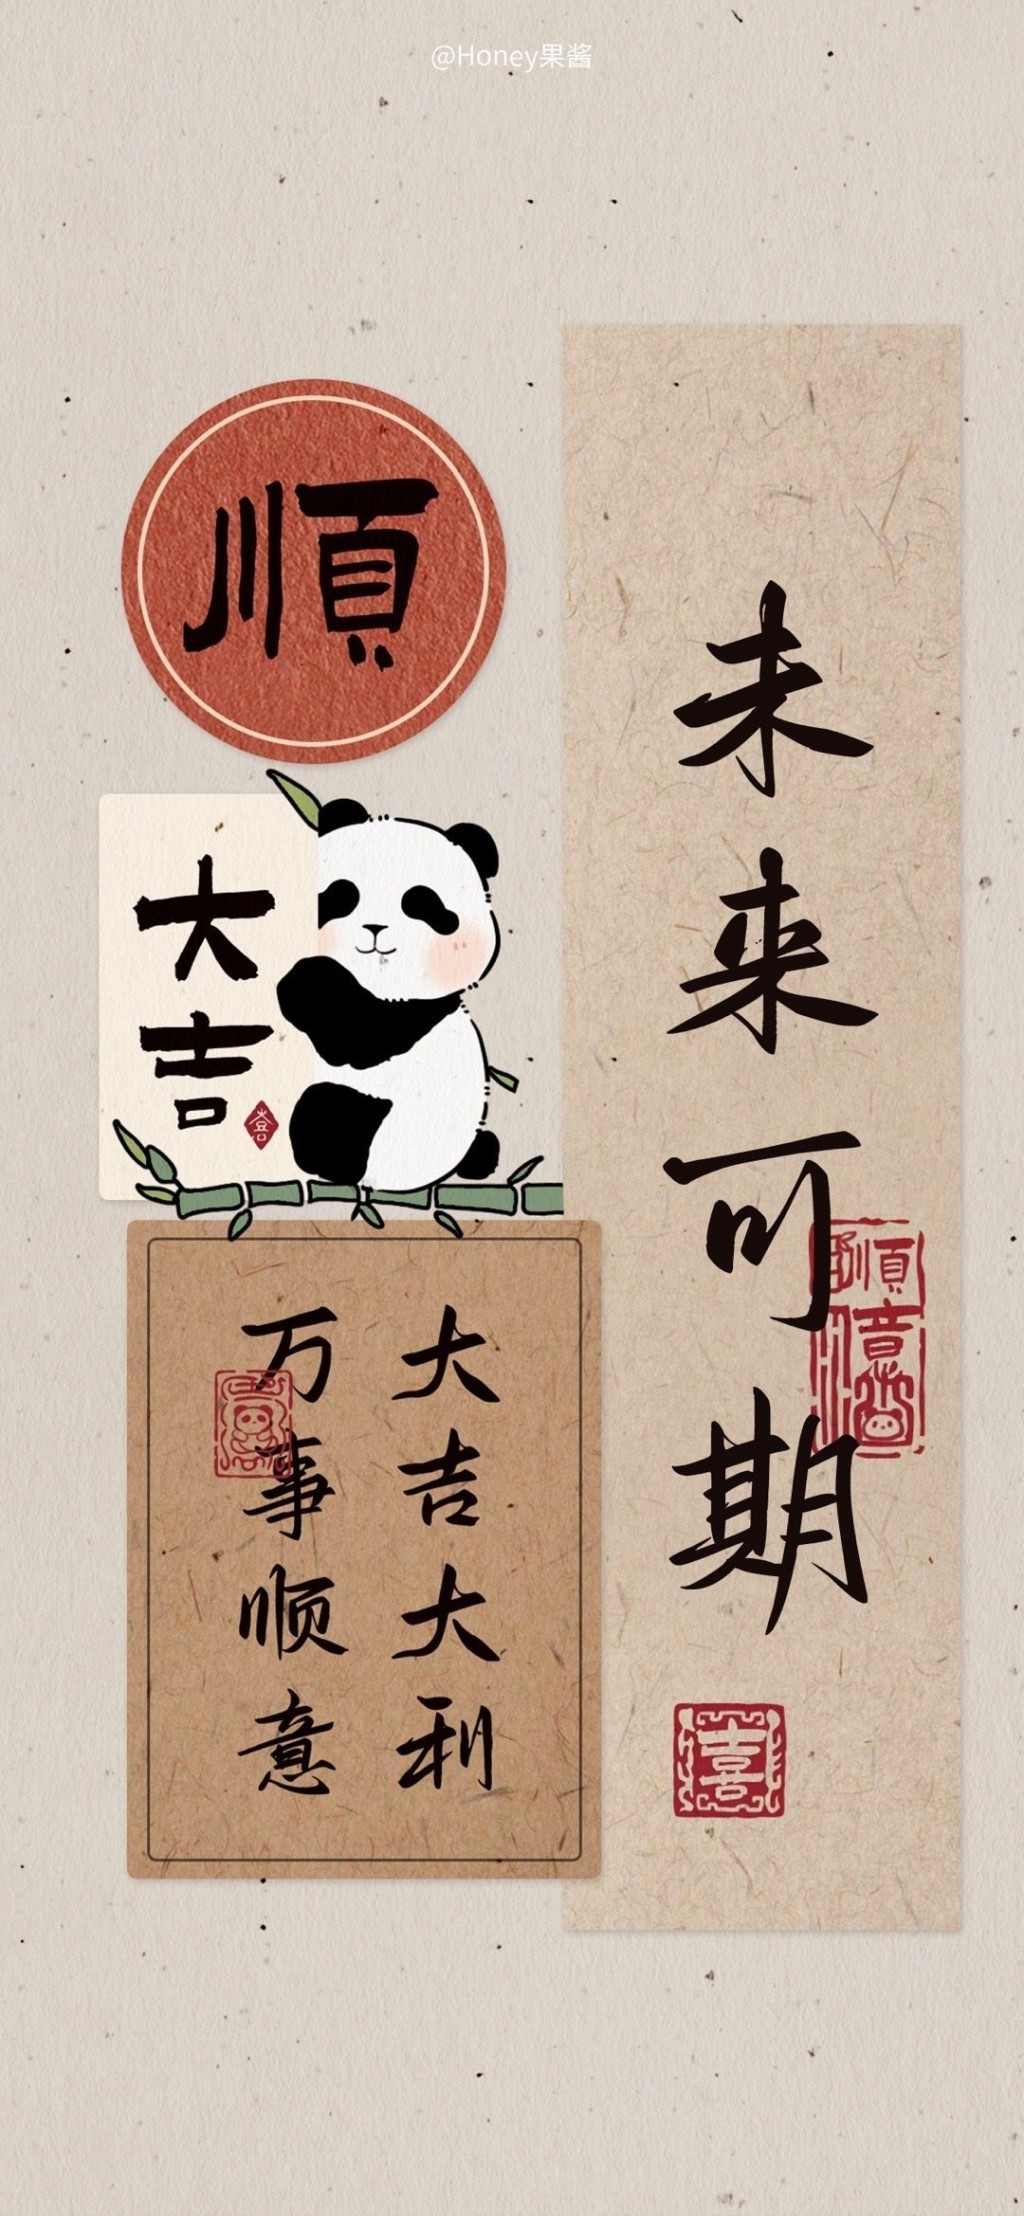 祝福文字熊猫插画手机壁纸